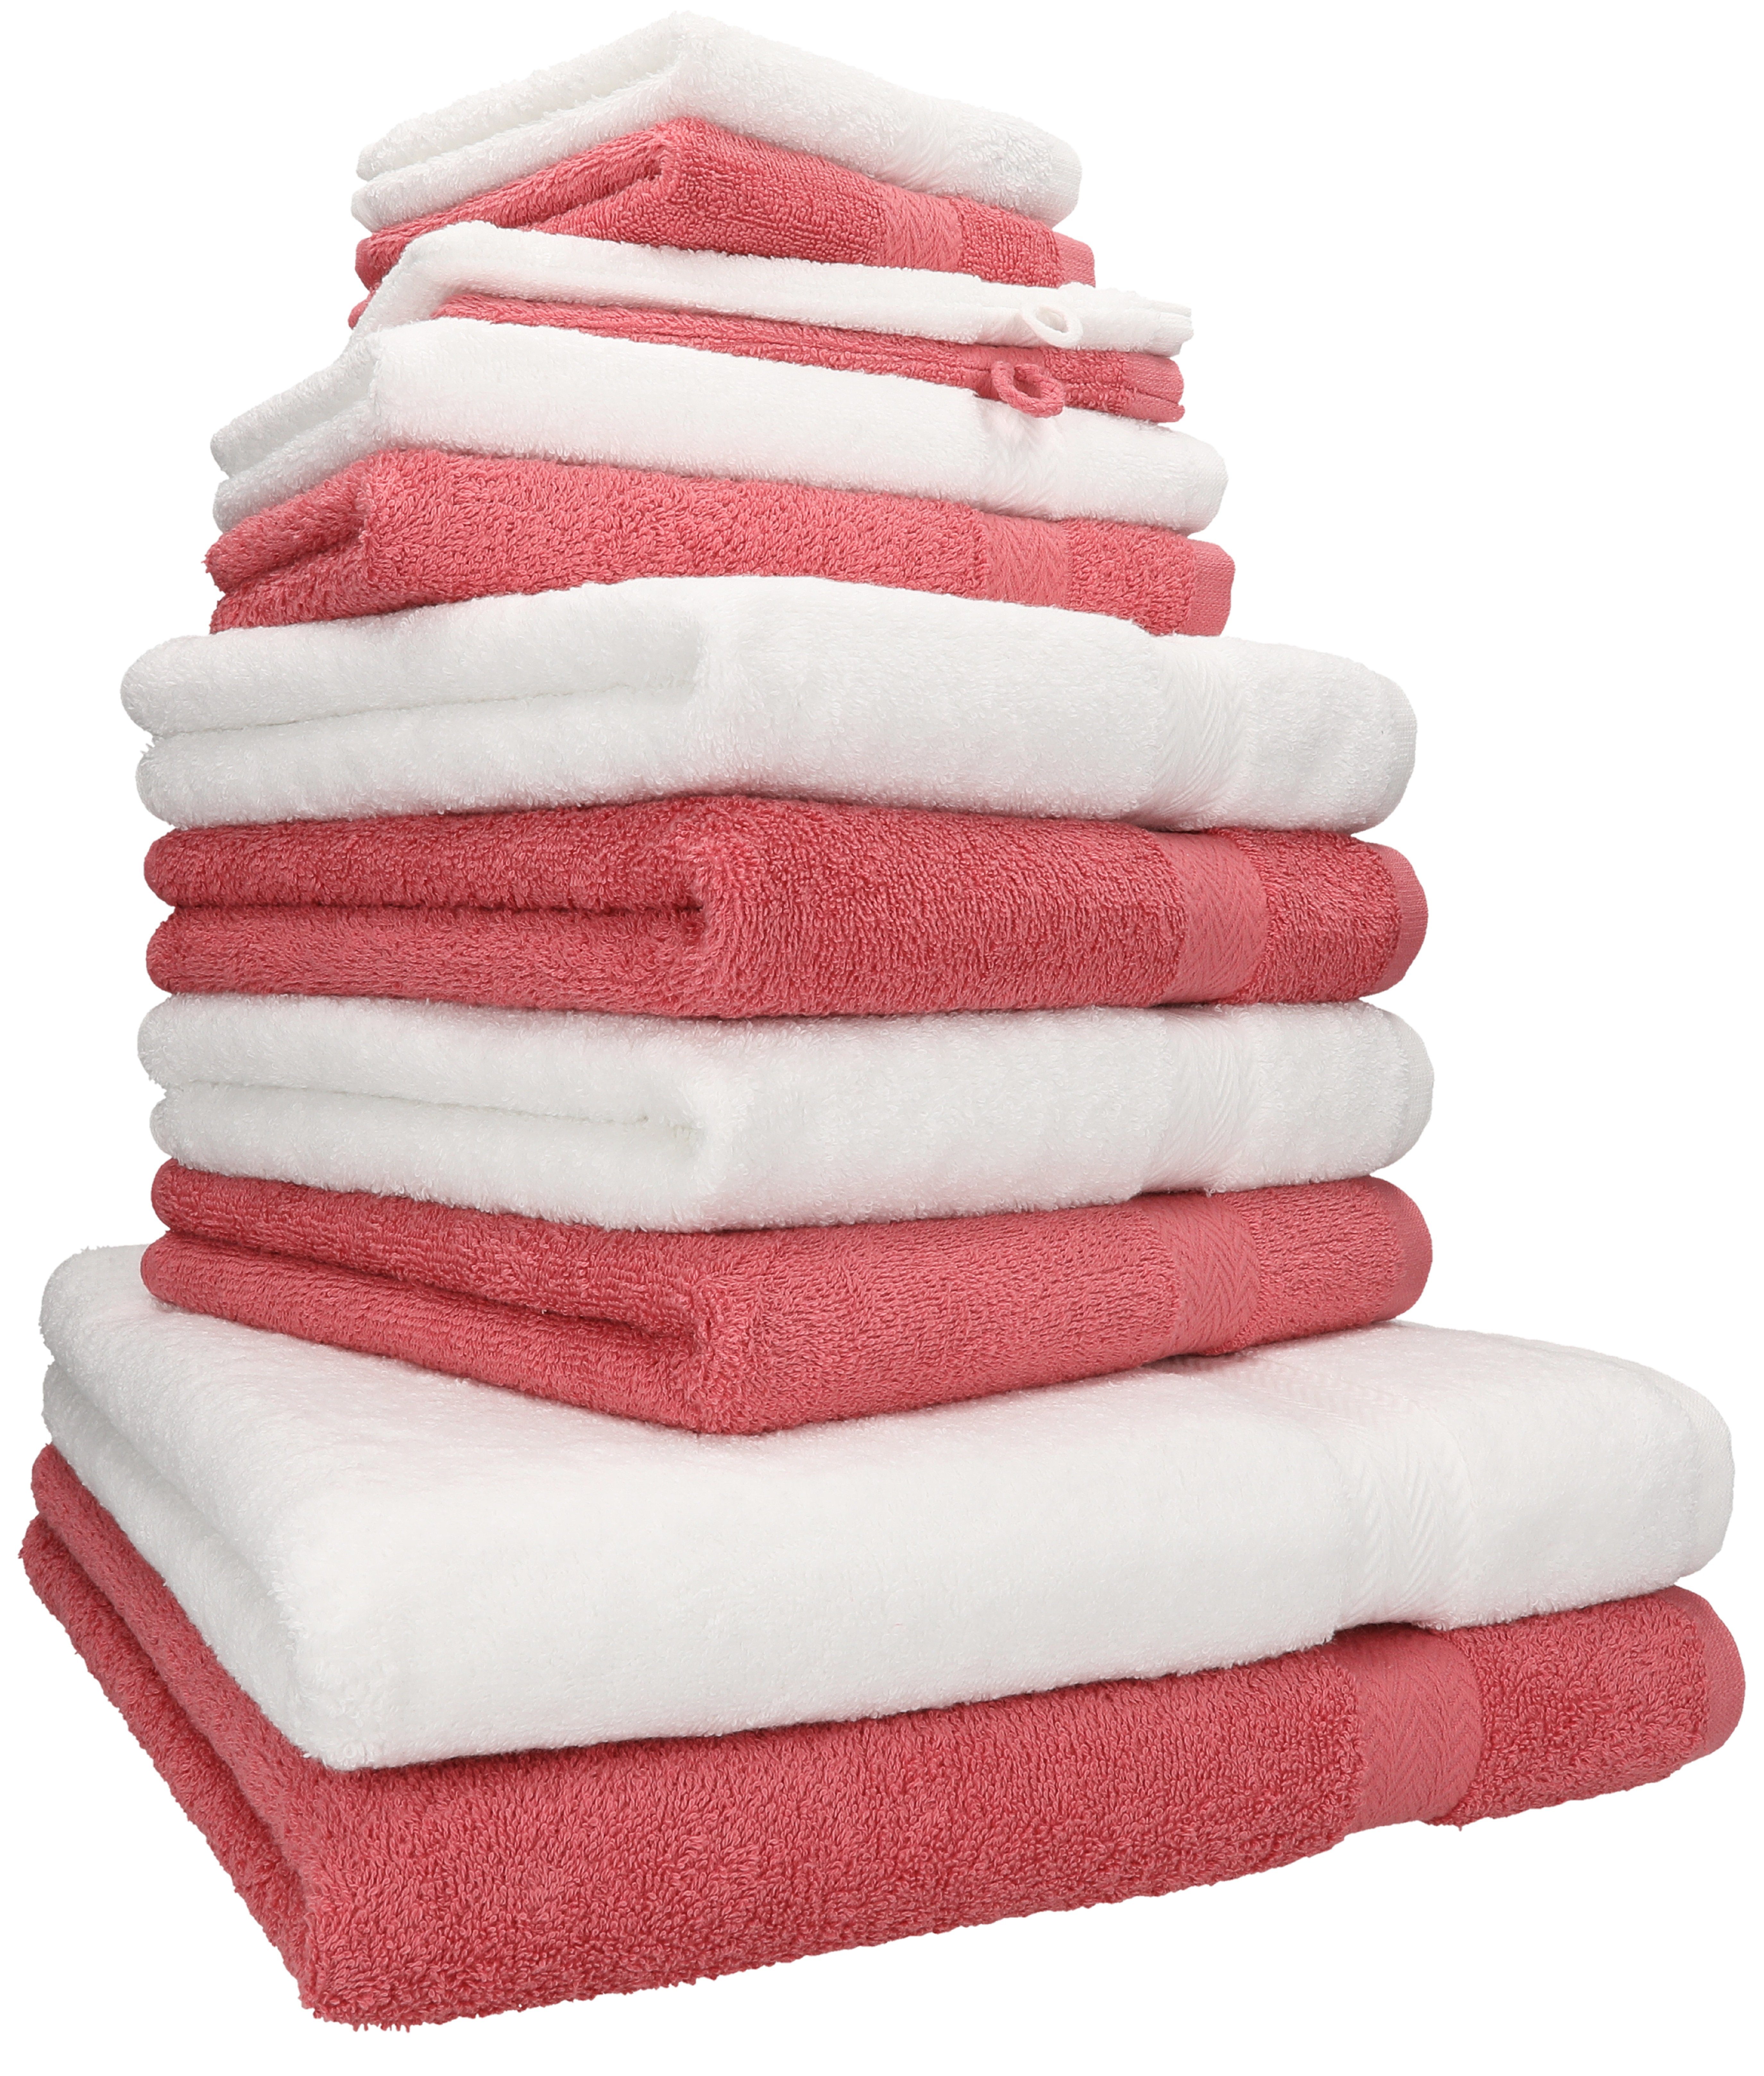 Betz Handtuch Set 12-TLG. Handtuch Set Premium 100% Baumwolle Farbe weiß/Himbeere, 100% Baumwolle, (12-tlg)